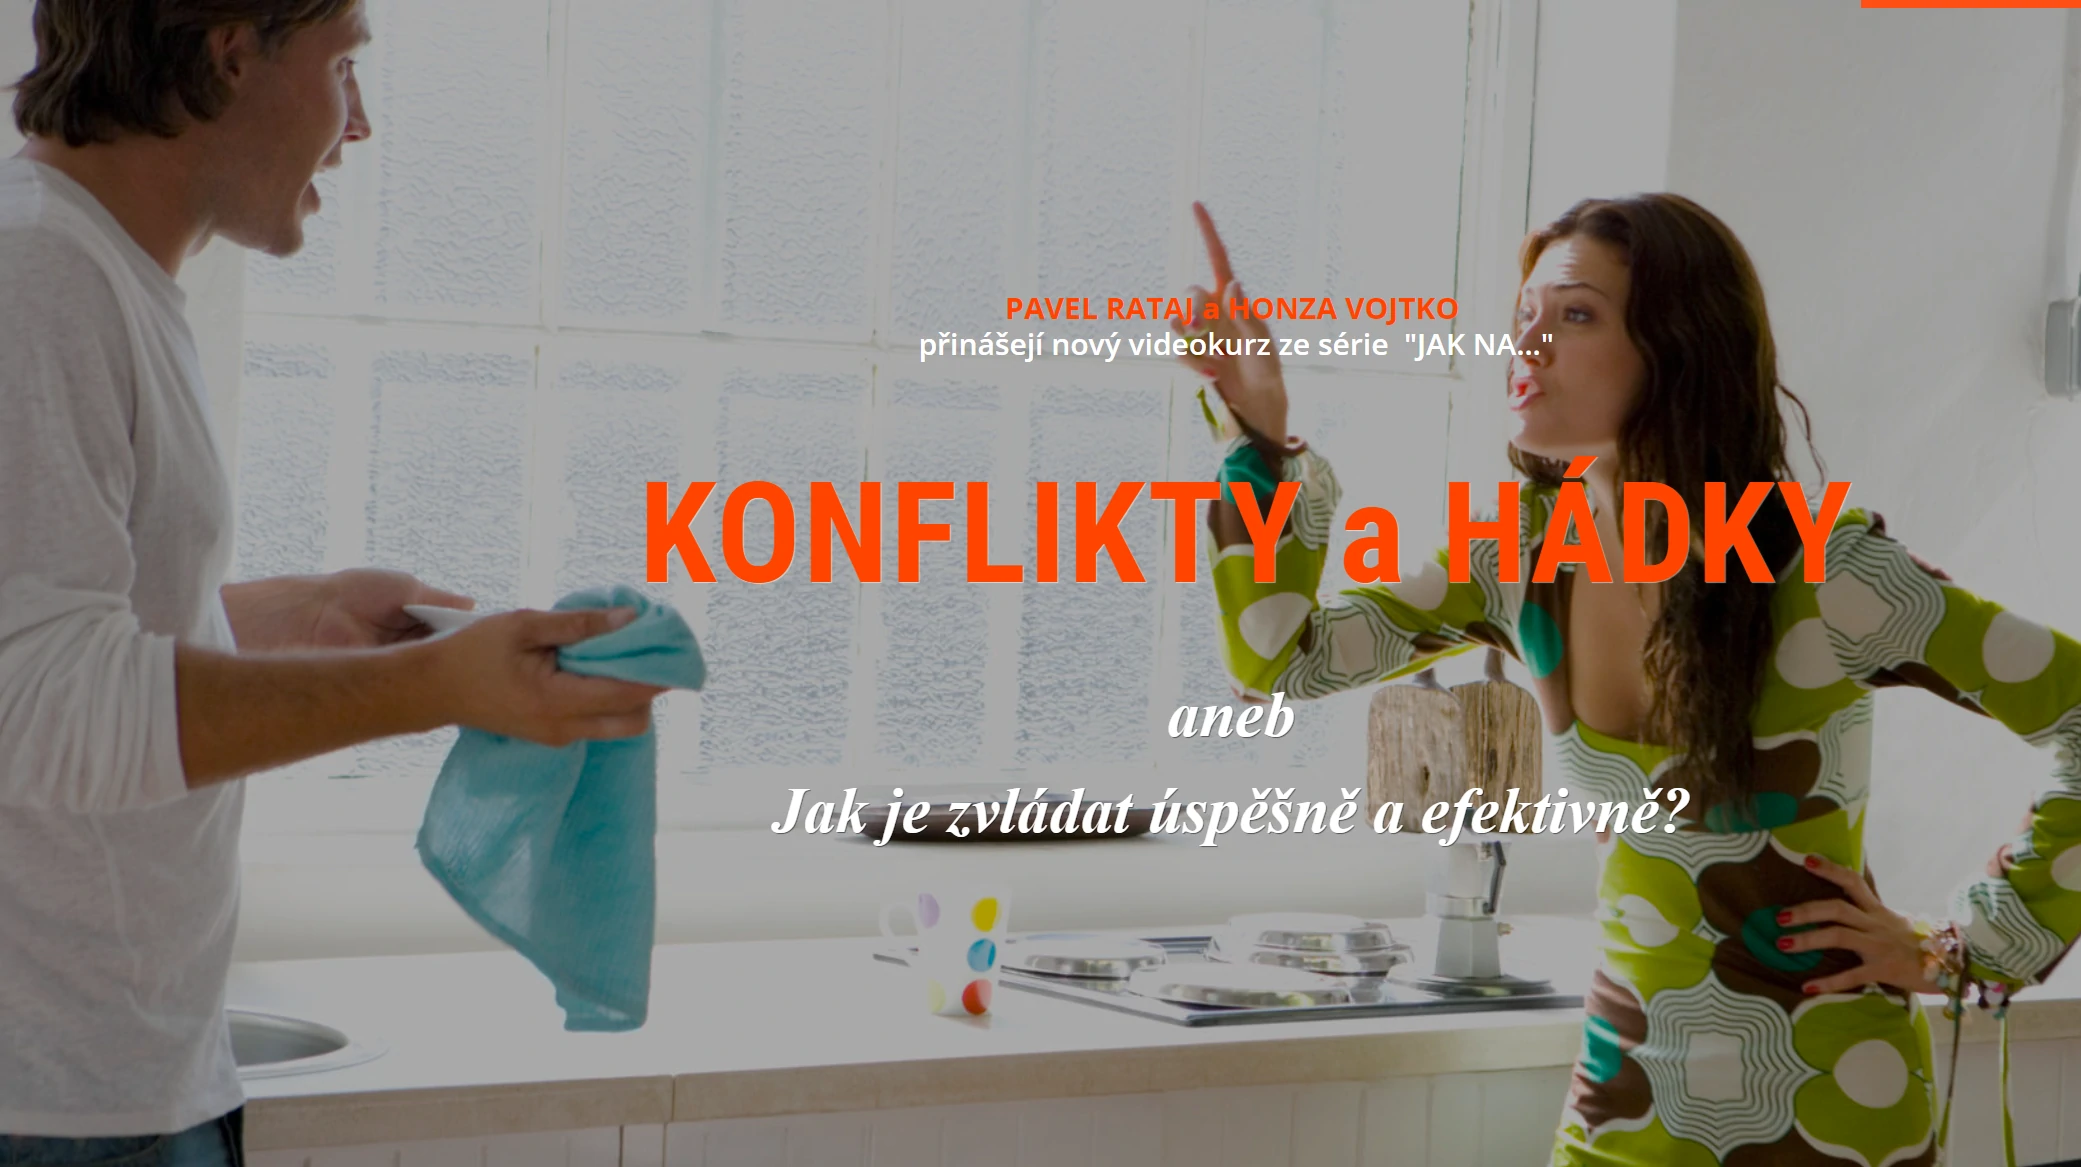 KONFLIKTY A HÁDKY - www.pavelrataj.cz